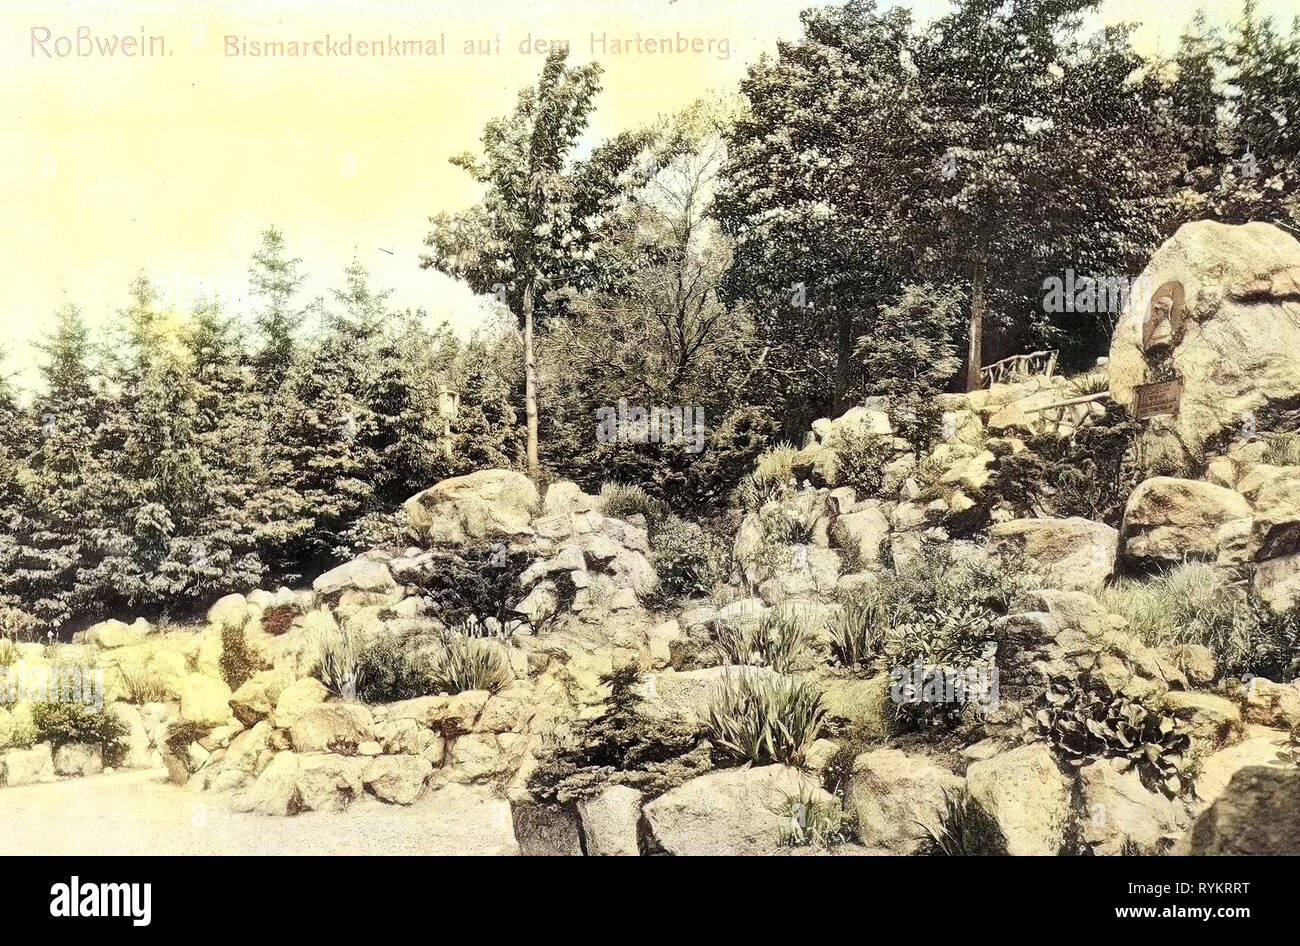 Monuments and memorials to Otto von Bismarck, Buildings in Roßwein, 1913, Landkreis Mittelsachsen, Roßwein, Bismarckdenkmal auf dem Hartenberg, Germany Stock Photo